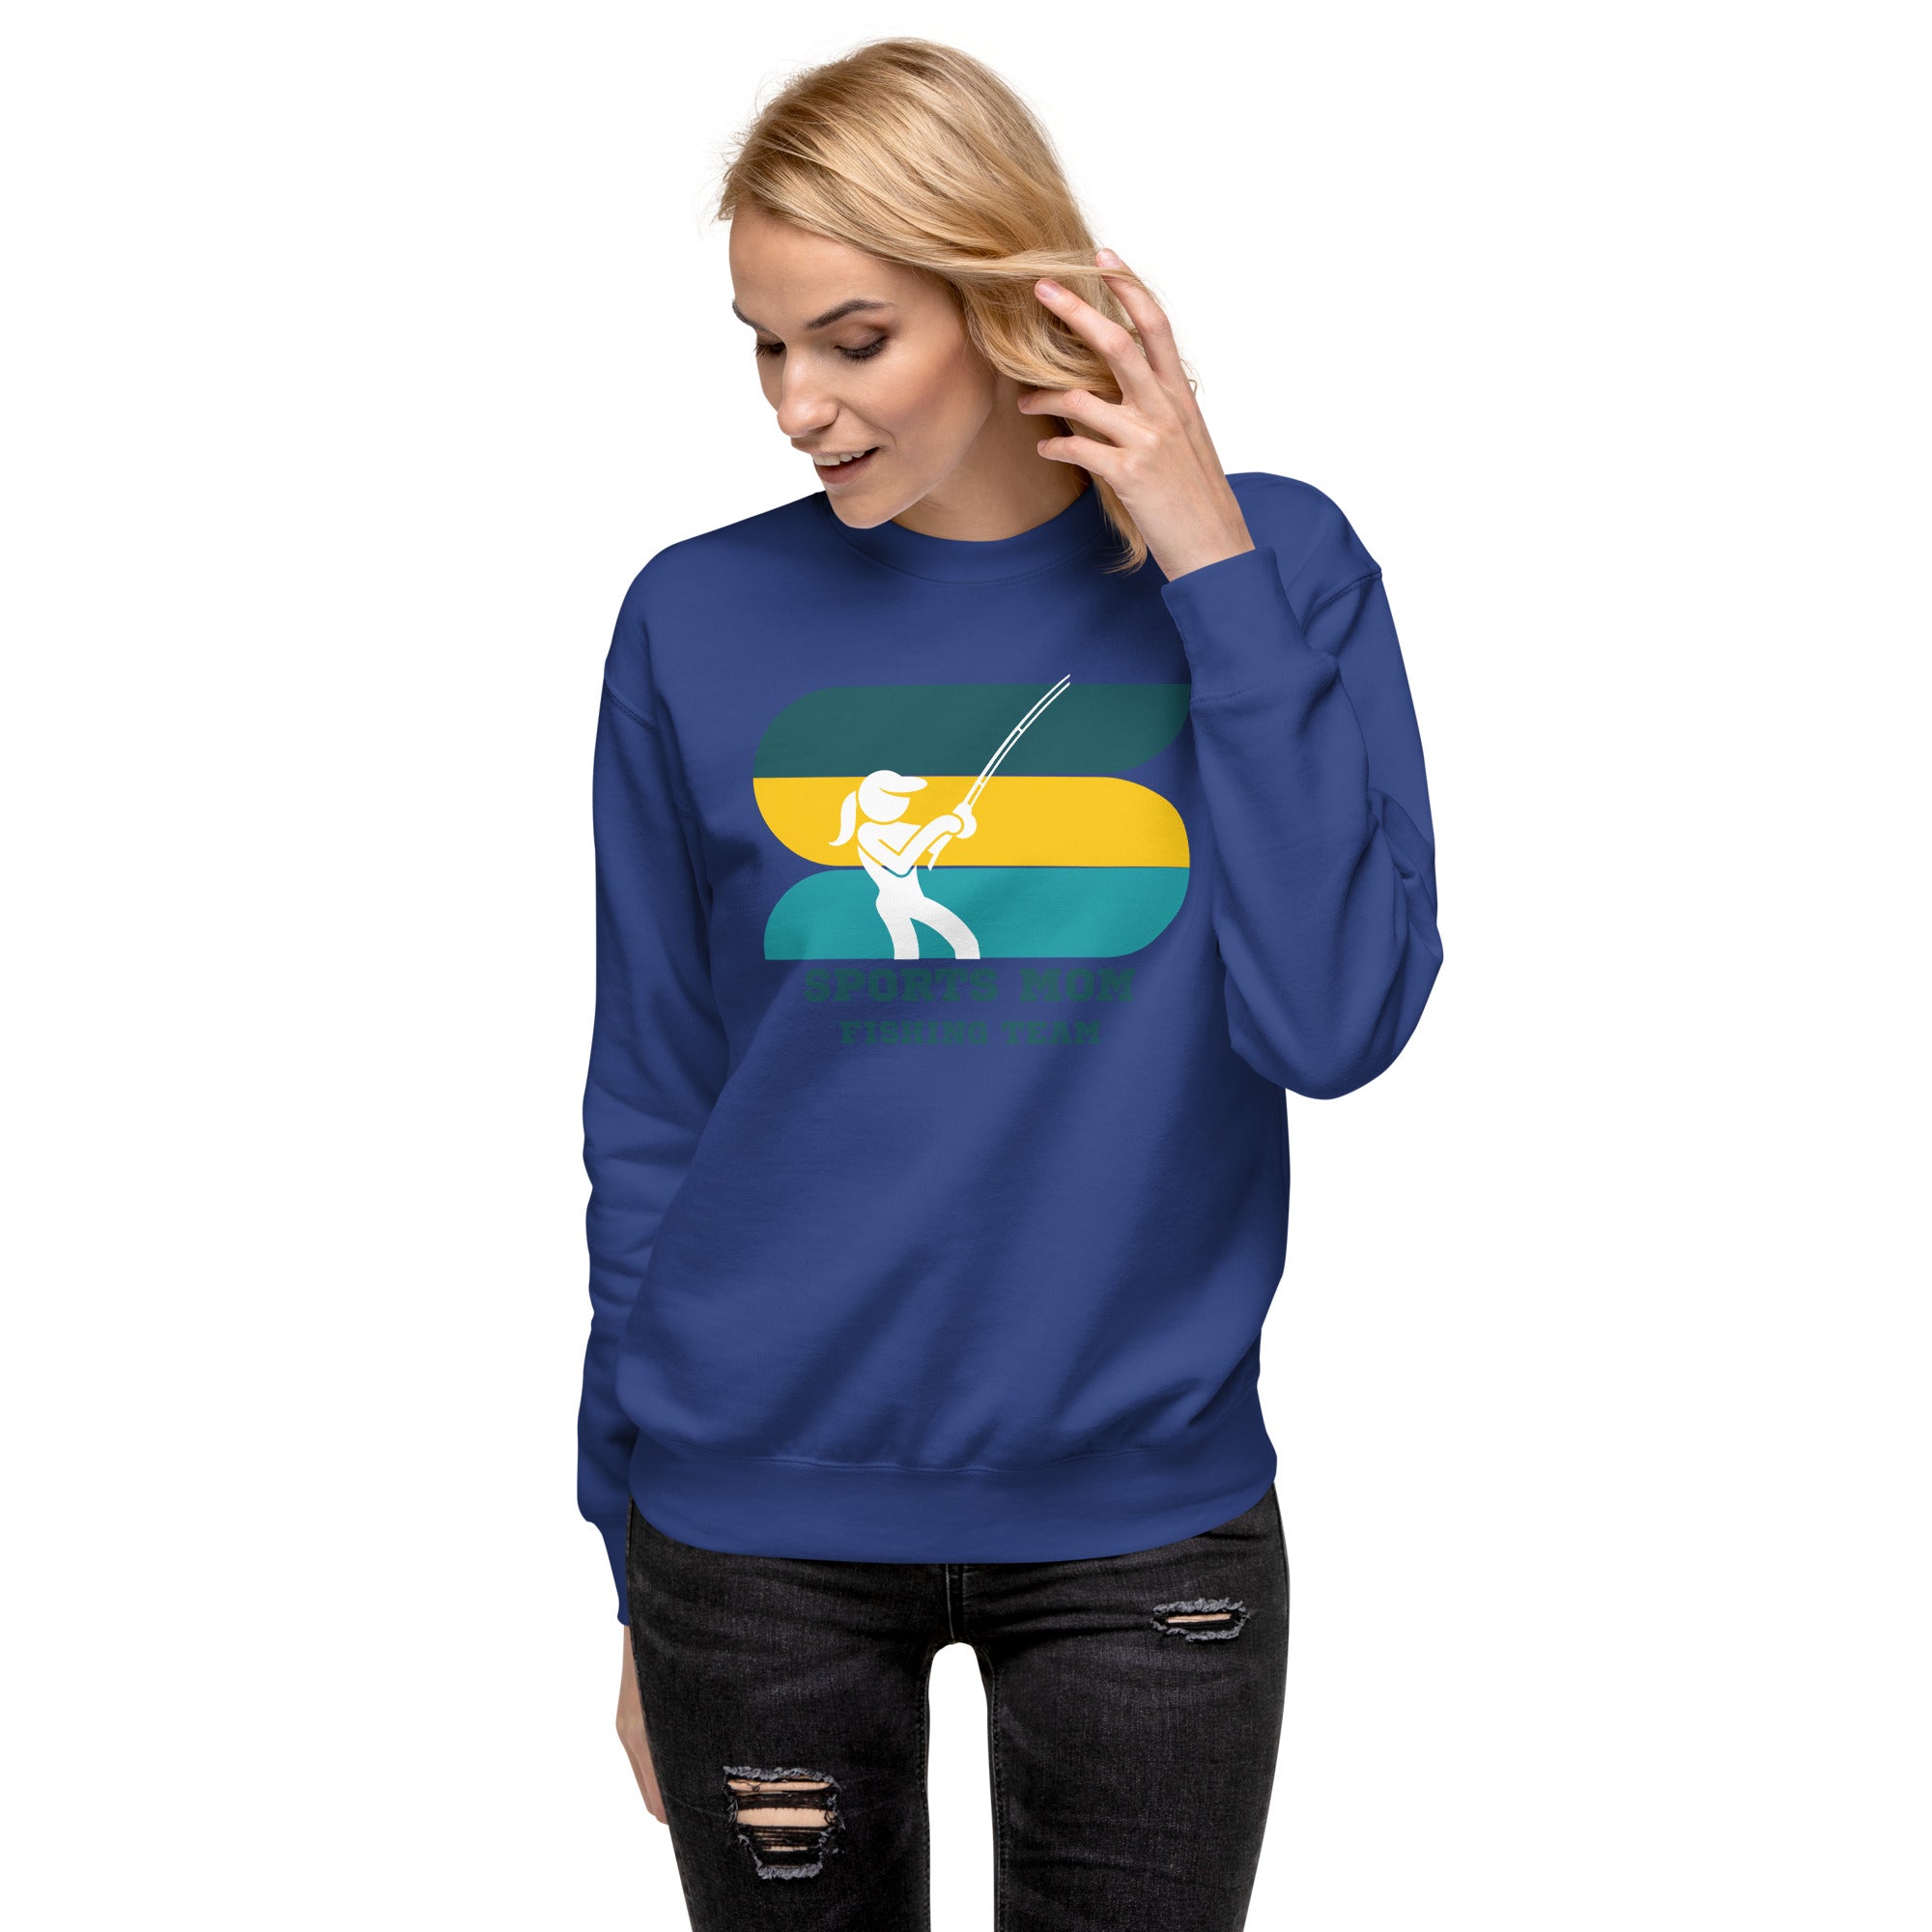 The Original Sports Mom Fishing Team Women's Premium Sweatshirt